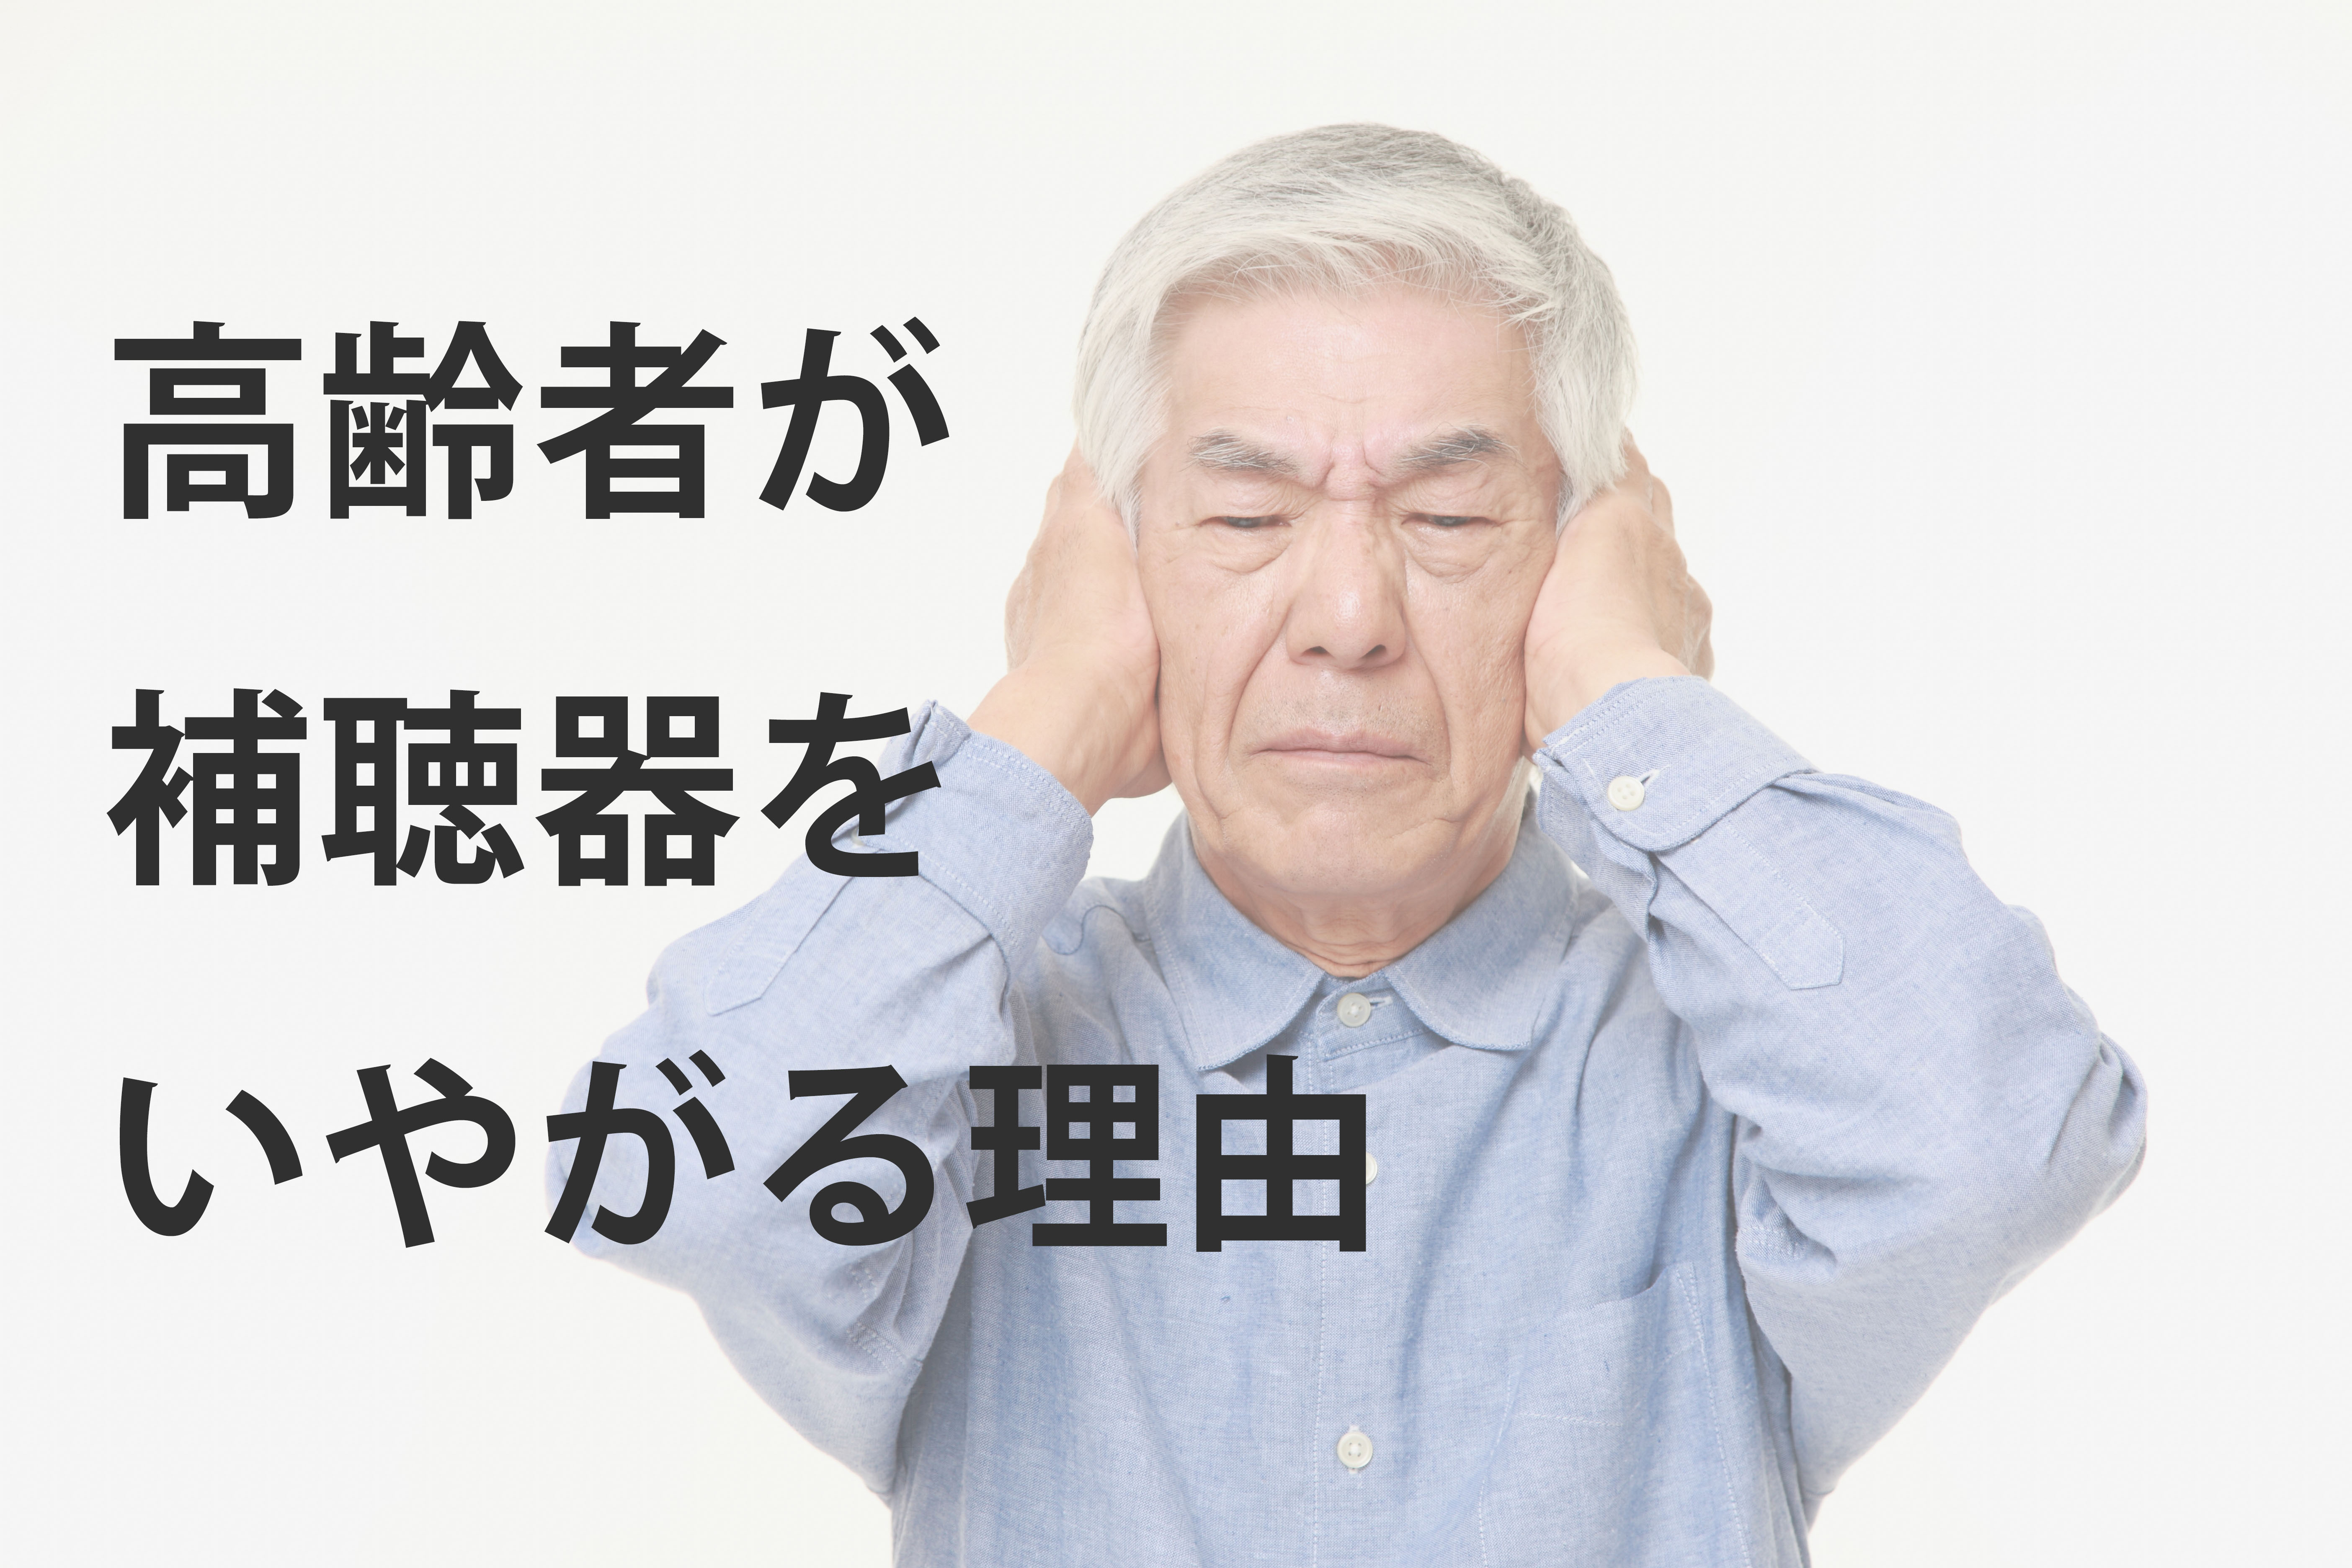 難聴高齢者サポートハンドブック 耳が遠くなったときの介護・生活支援・補聴器/日本医療企画/難聴高齢者のサポートを考える研究会